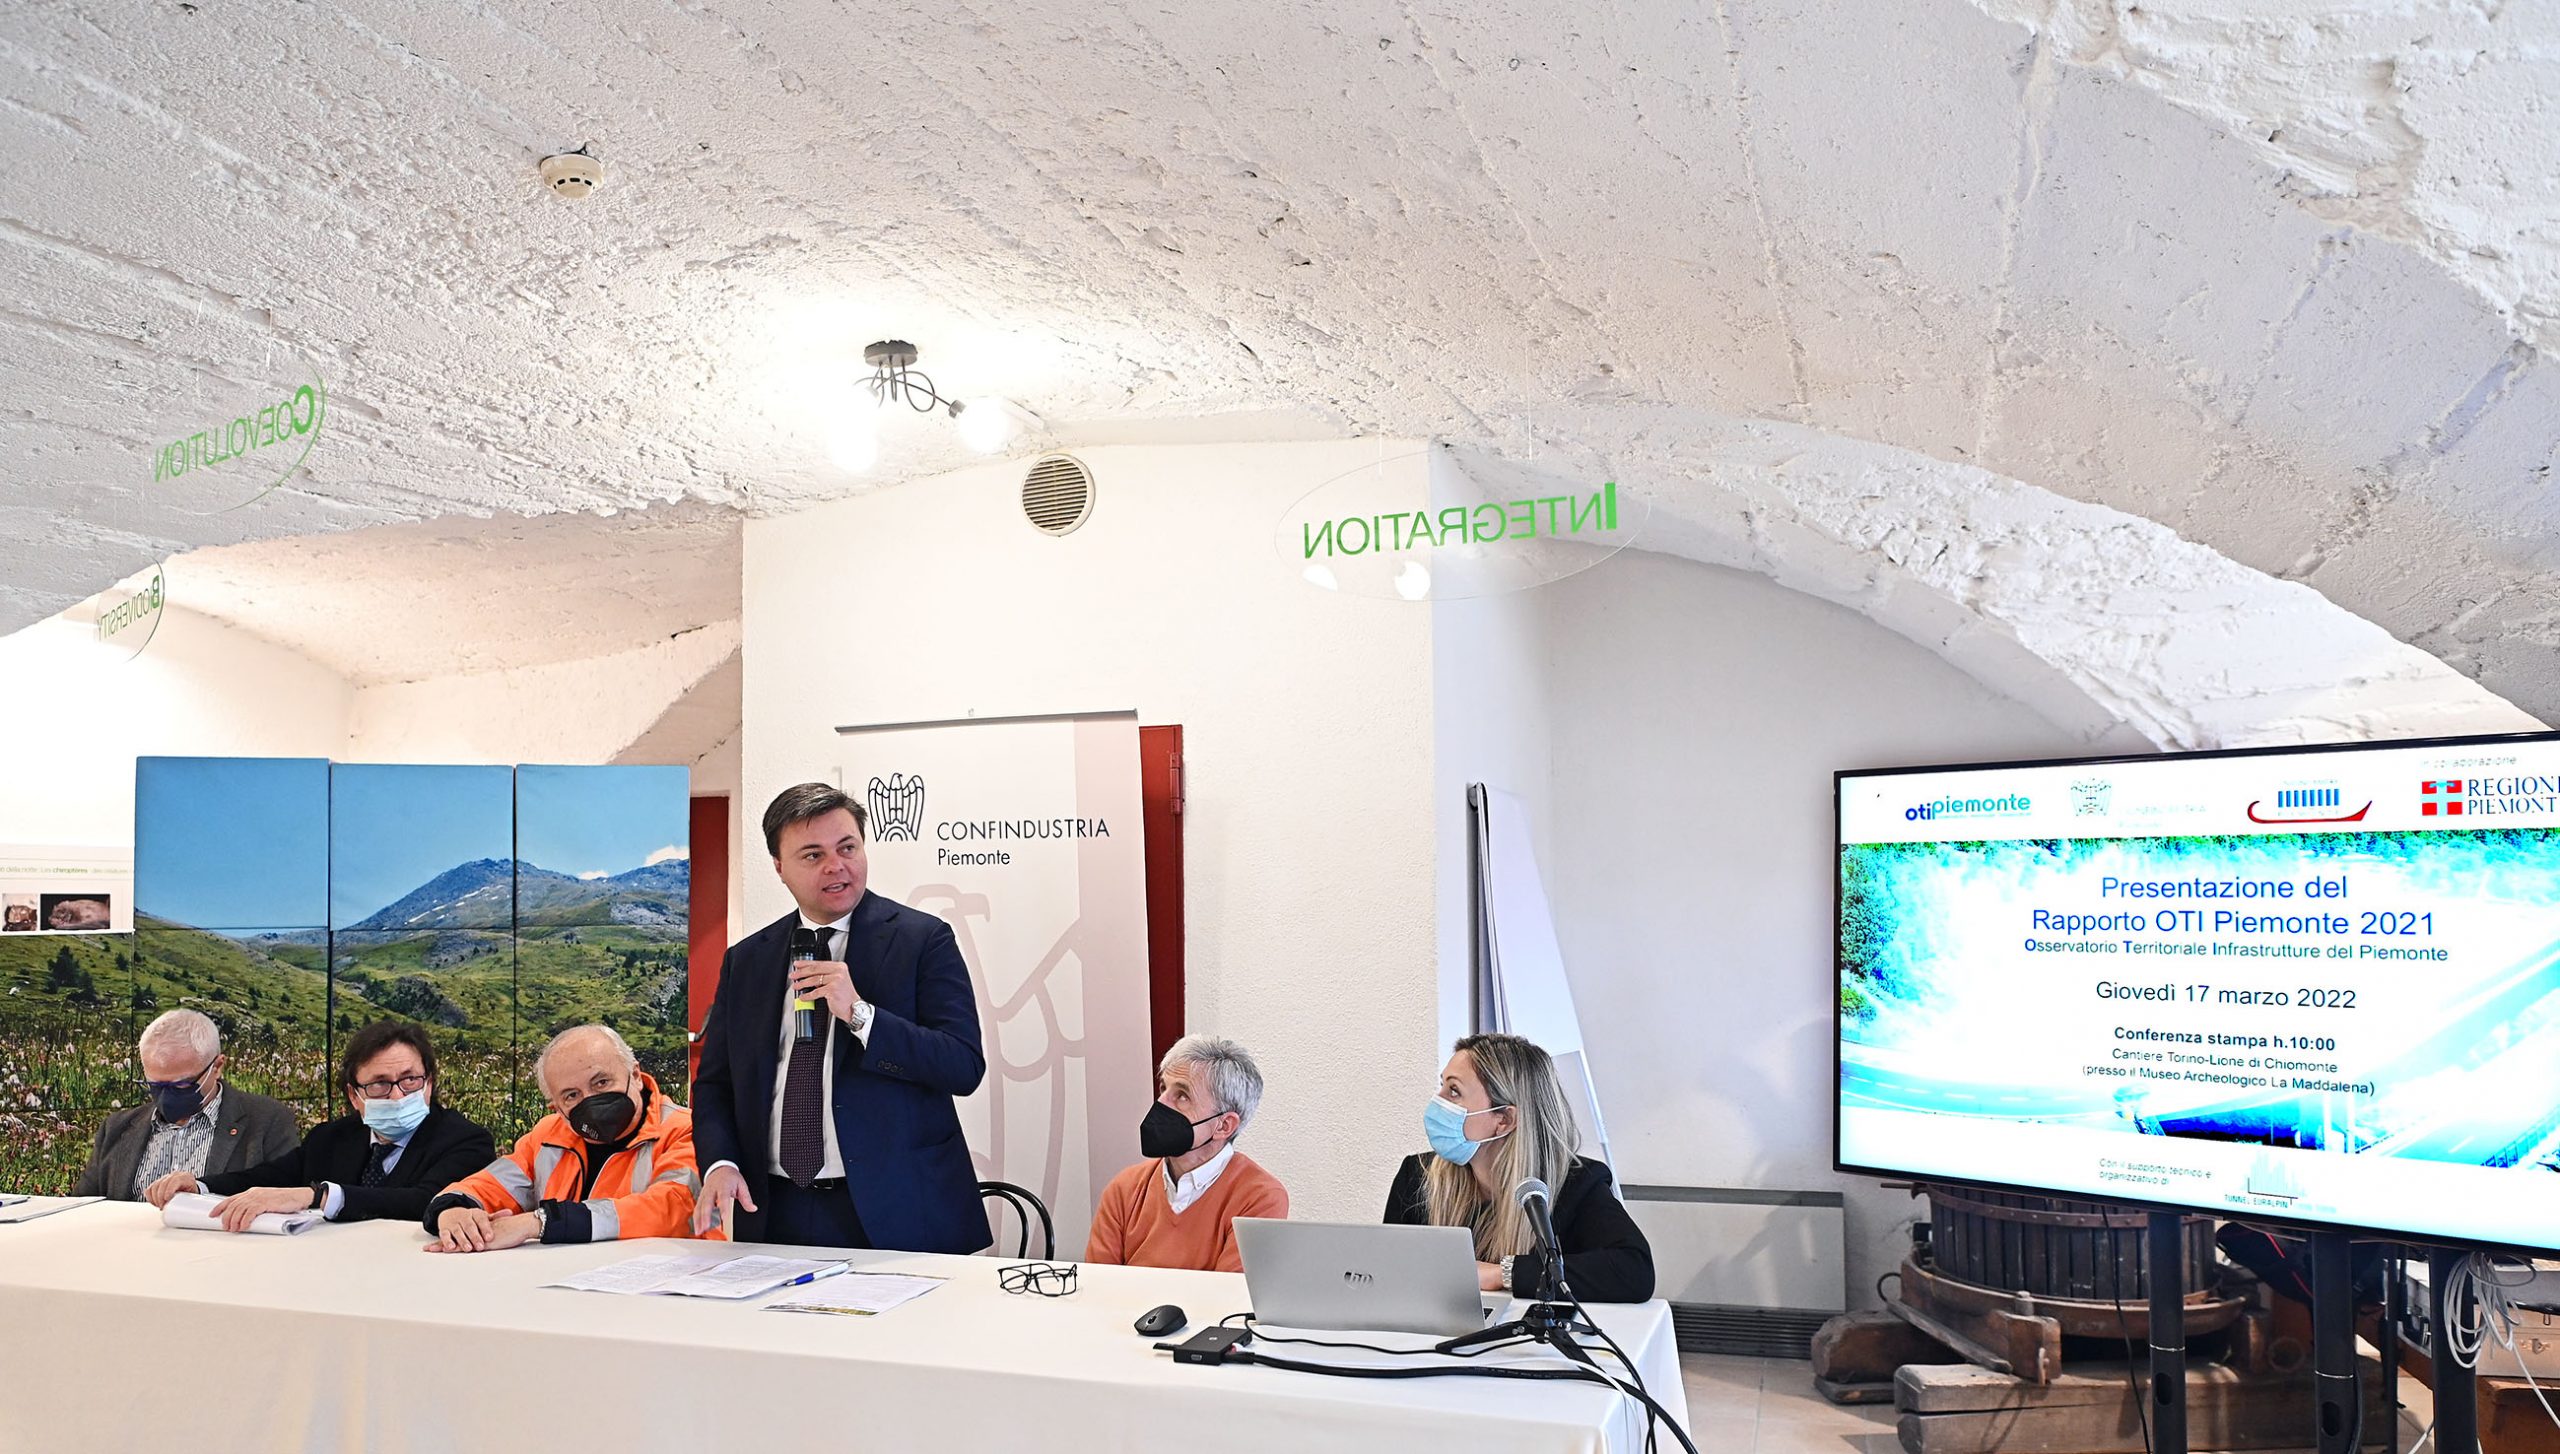 Presentazione rapporto OTI Piemonte 2021 presso museo archeologico la Maddalena e visita cantiere TAV di chiomonte